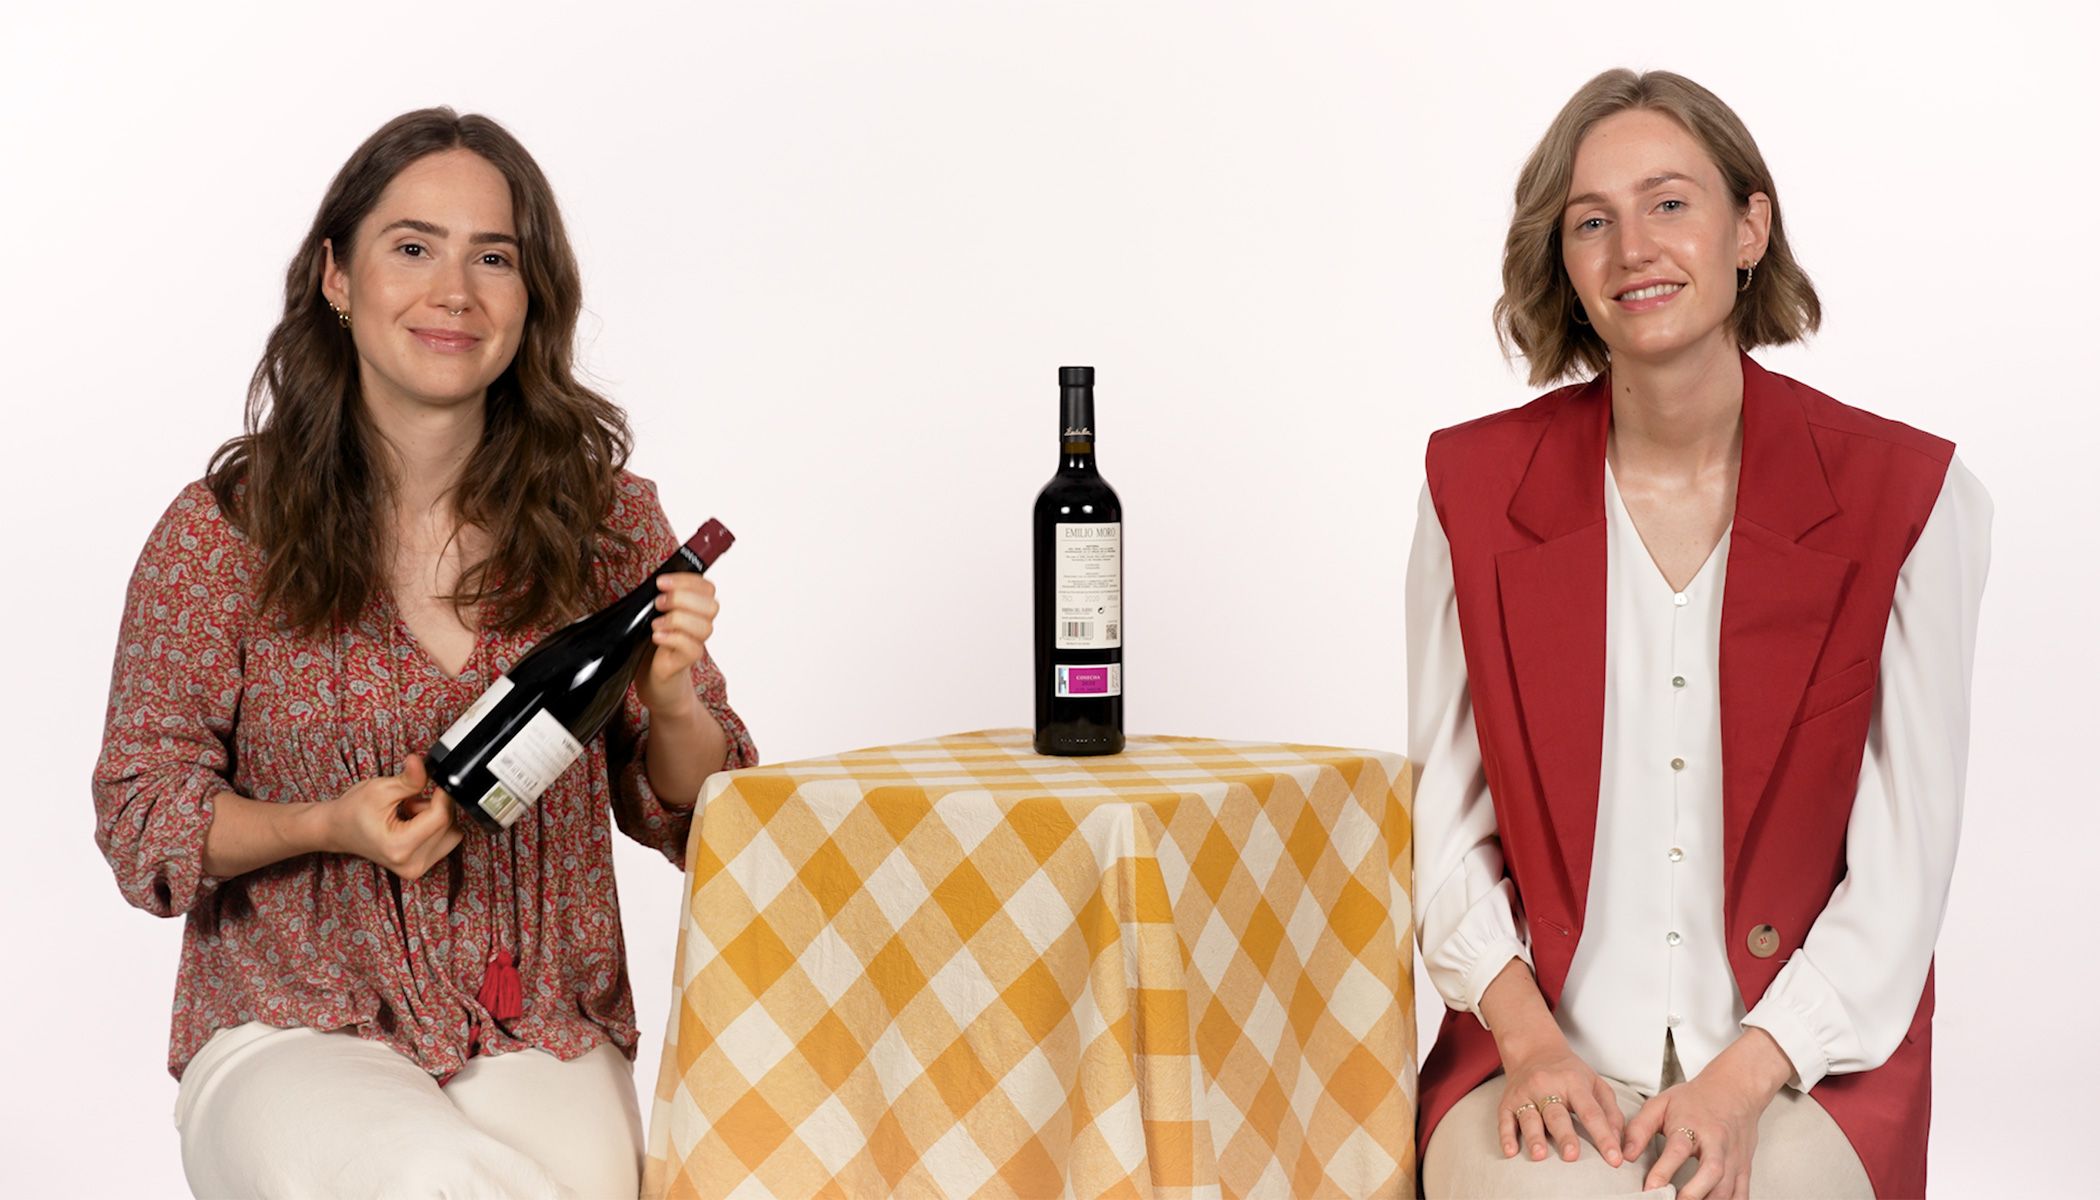 Copa para vino personalizada  Tienda Muxeres - Creadoras